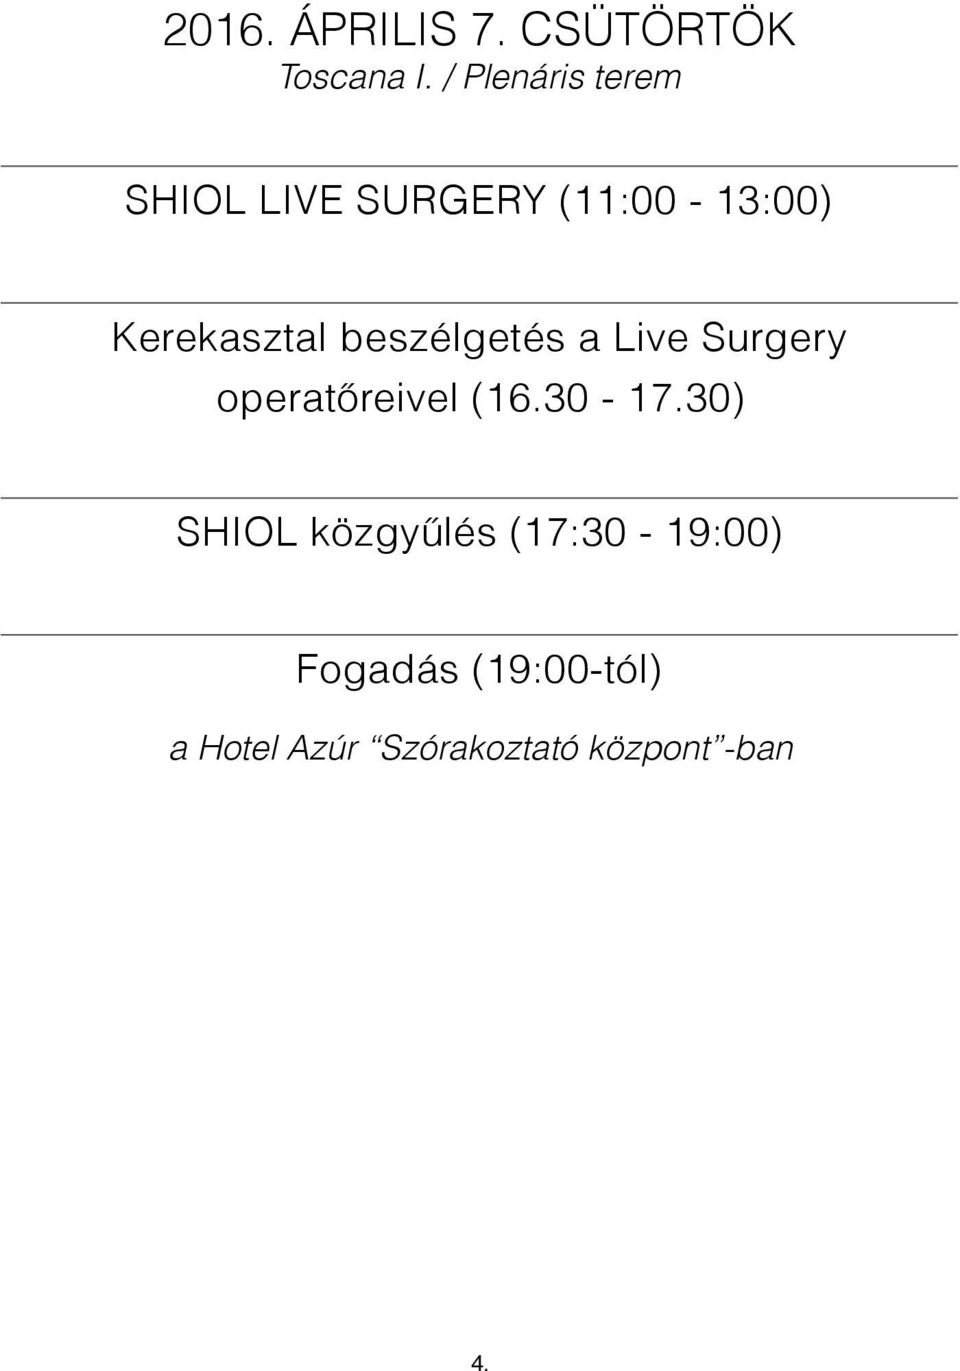 beszélgetés a Live Surgery operatőreivel (16.30-17.